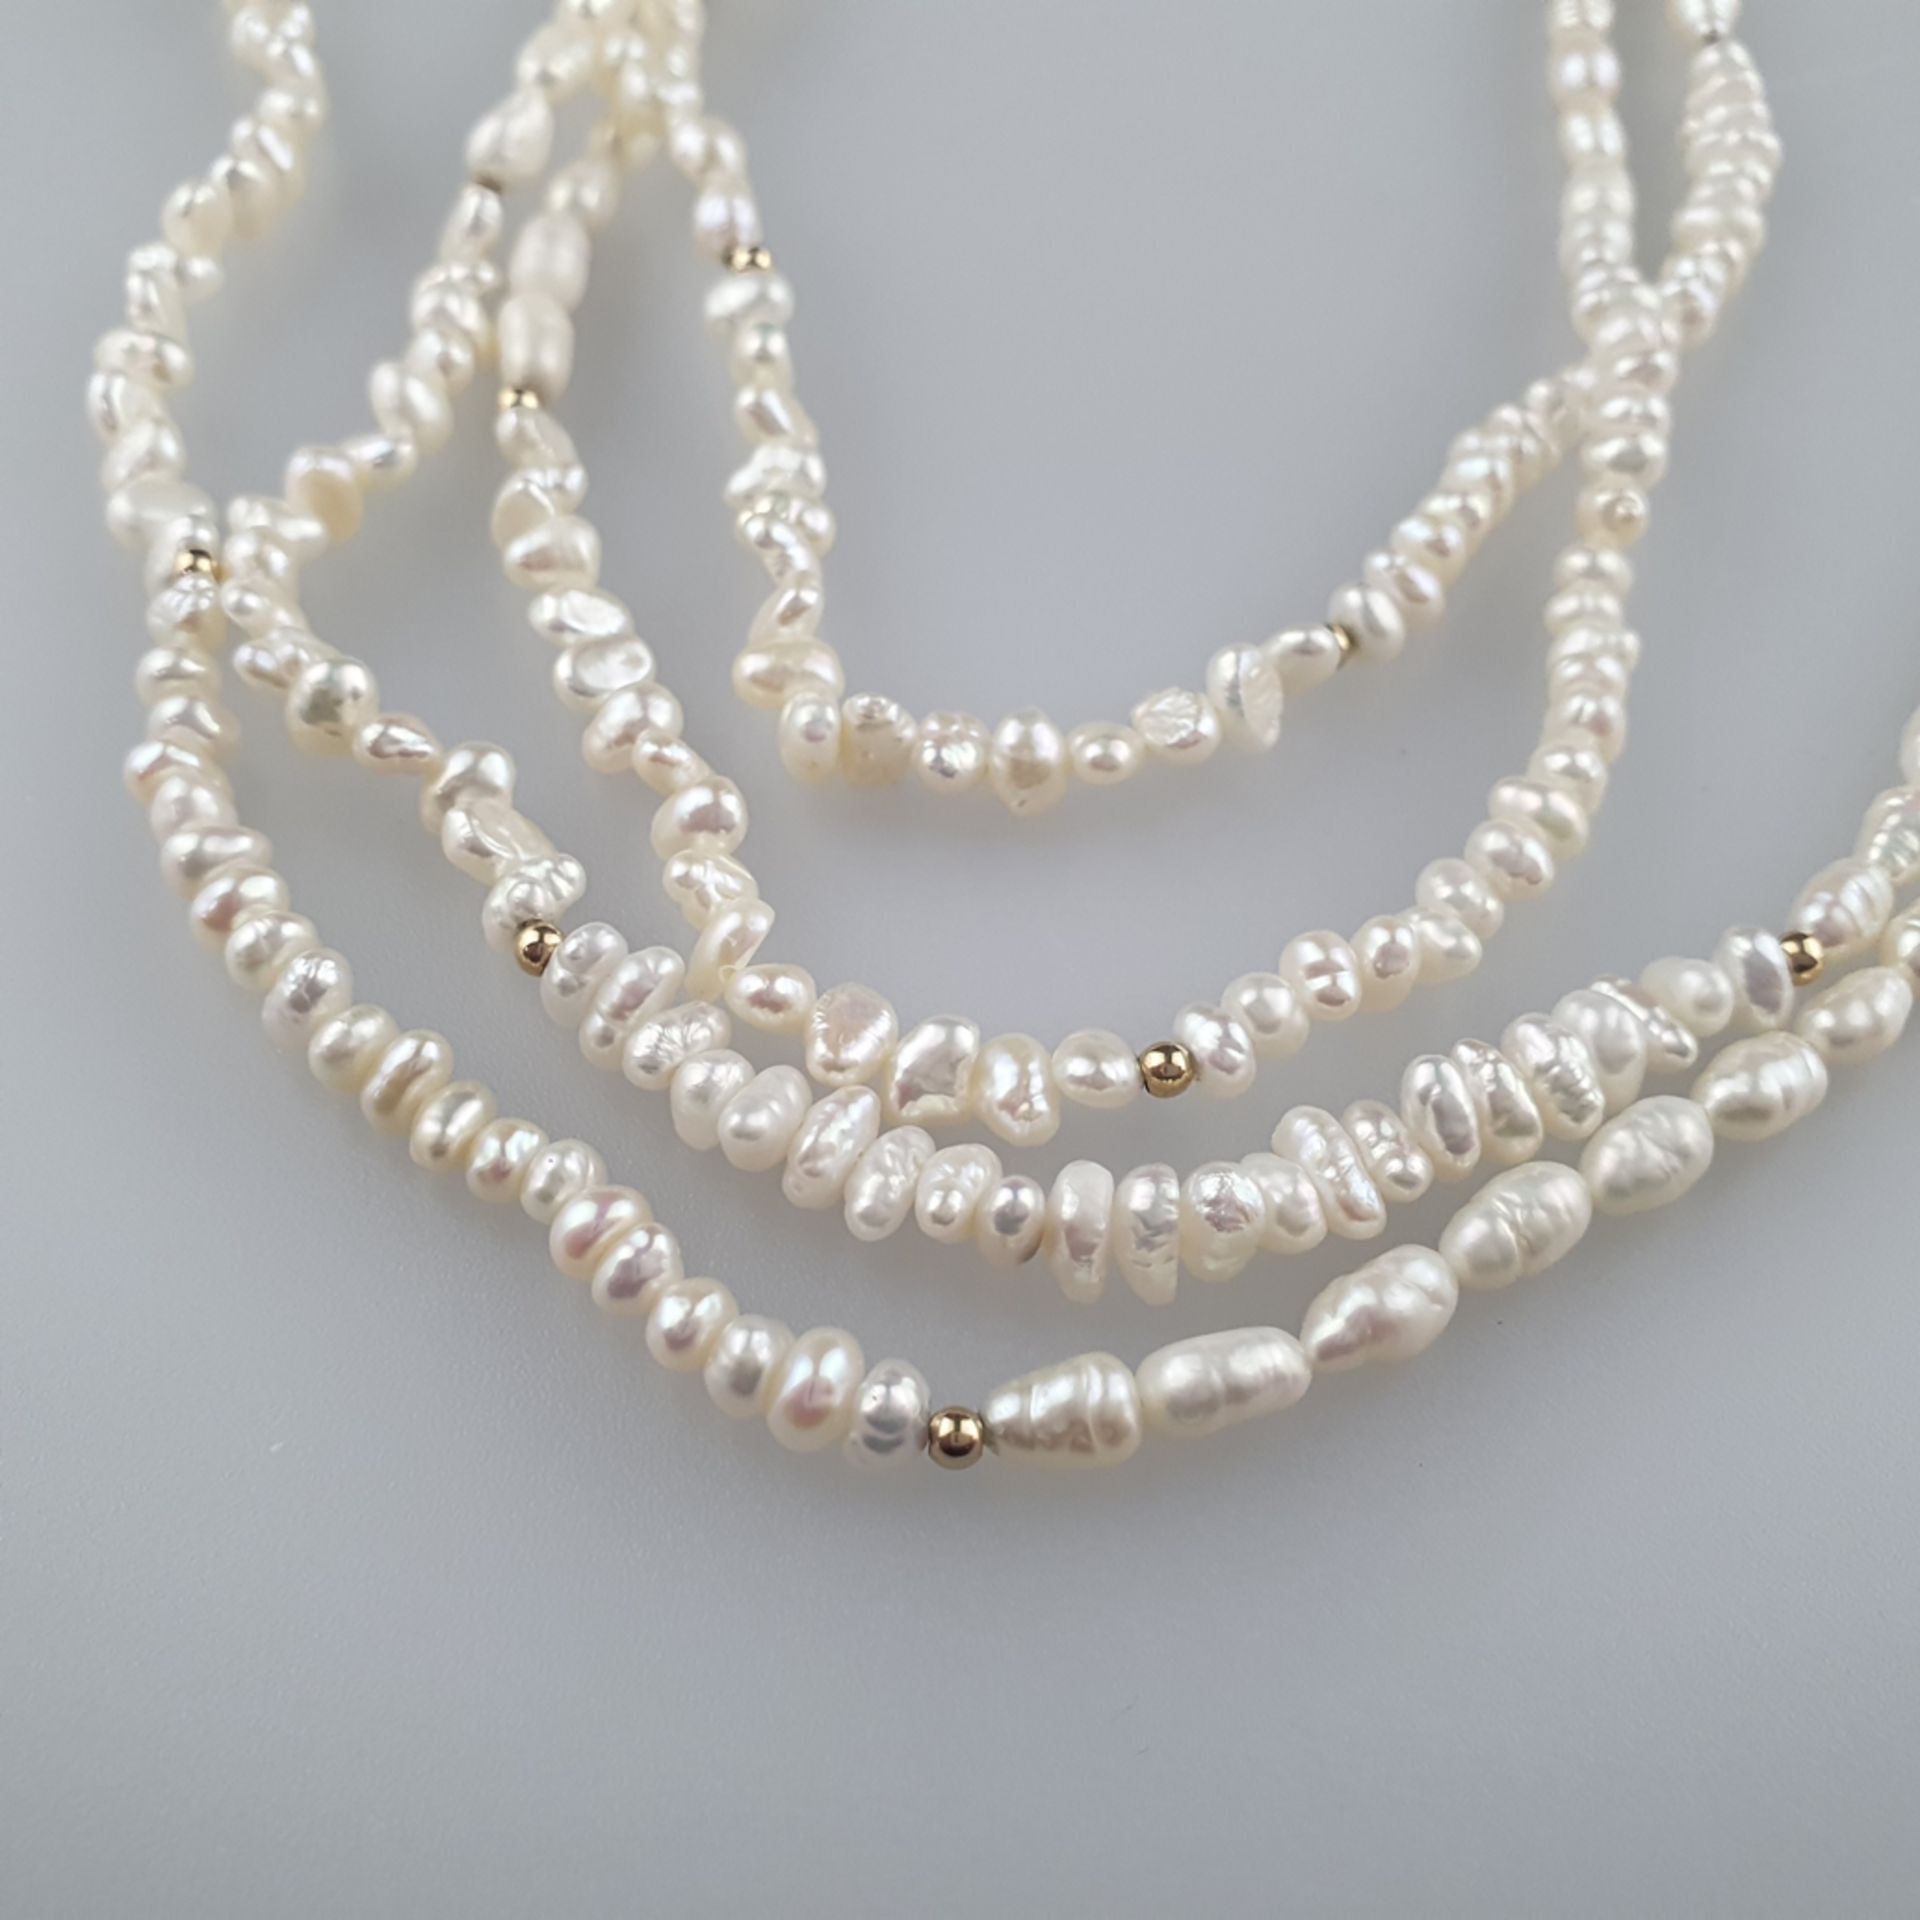 Endlos-Perlenkette - unregelmäßig geformte aufgezogene Süßwasserperlen in der Art der Charleston-Ke - Image 2 of 4